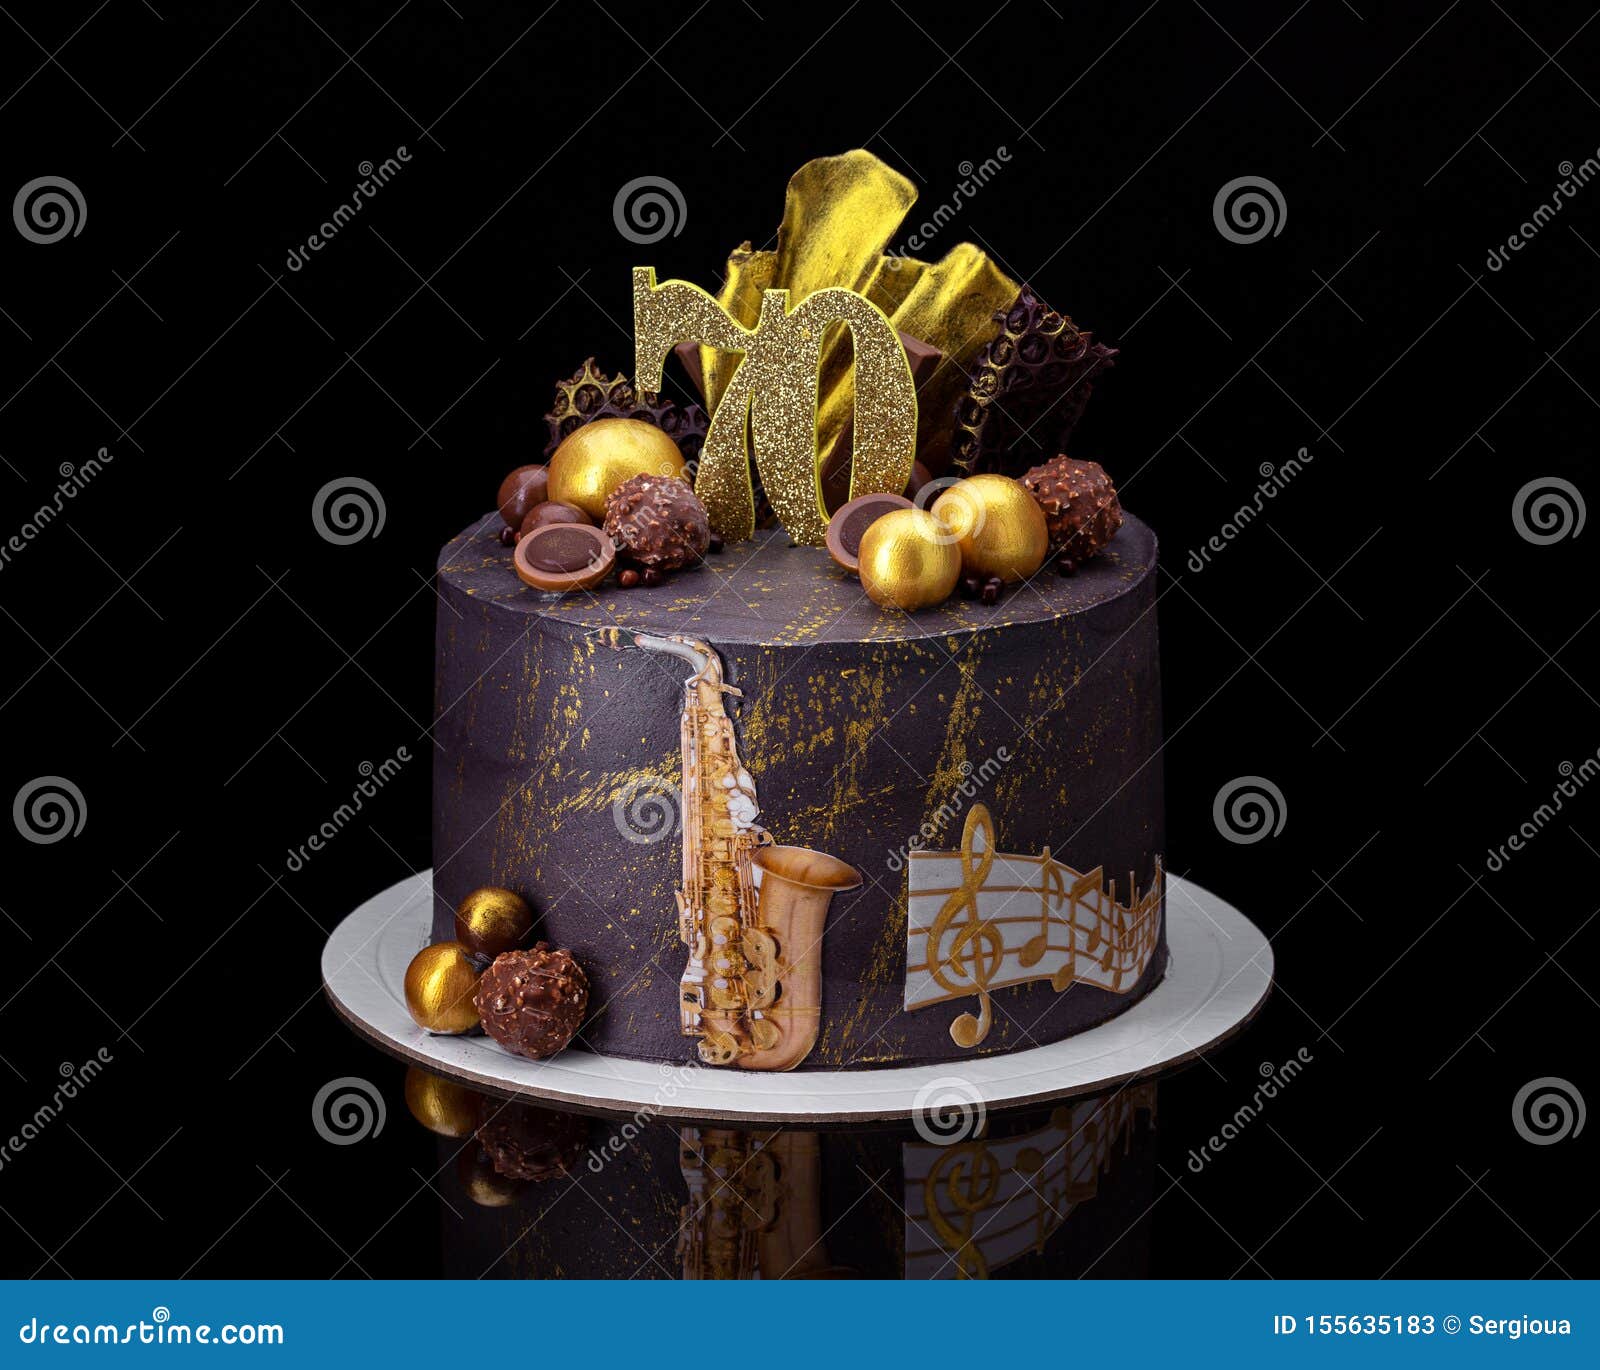 Saxophone cake - Decorated Cake by Elaine - Ginger Cat - CakesDecor